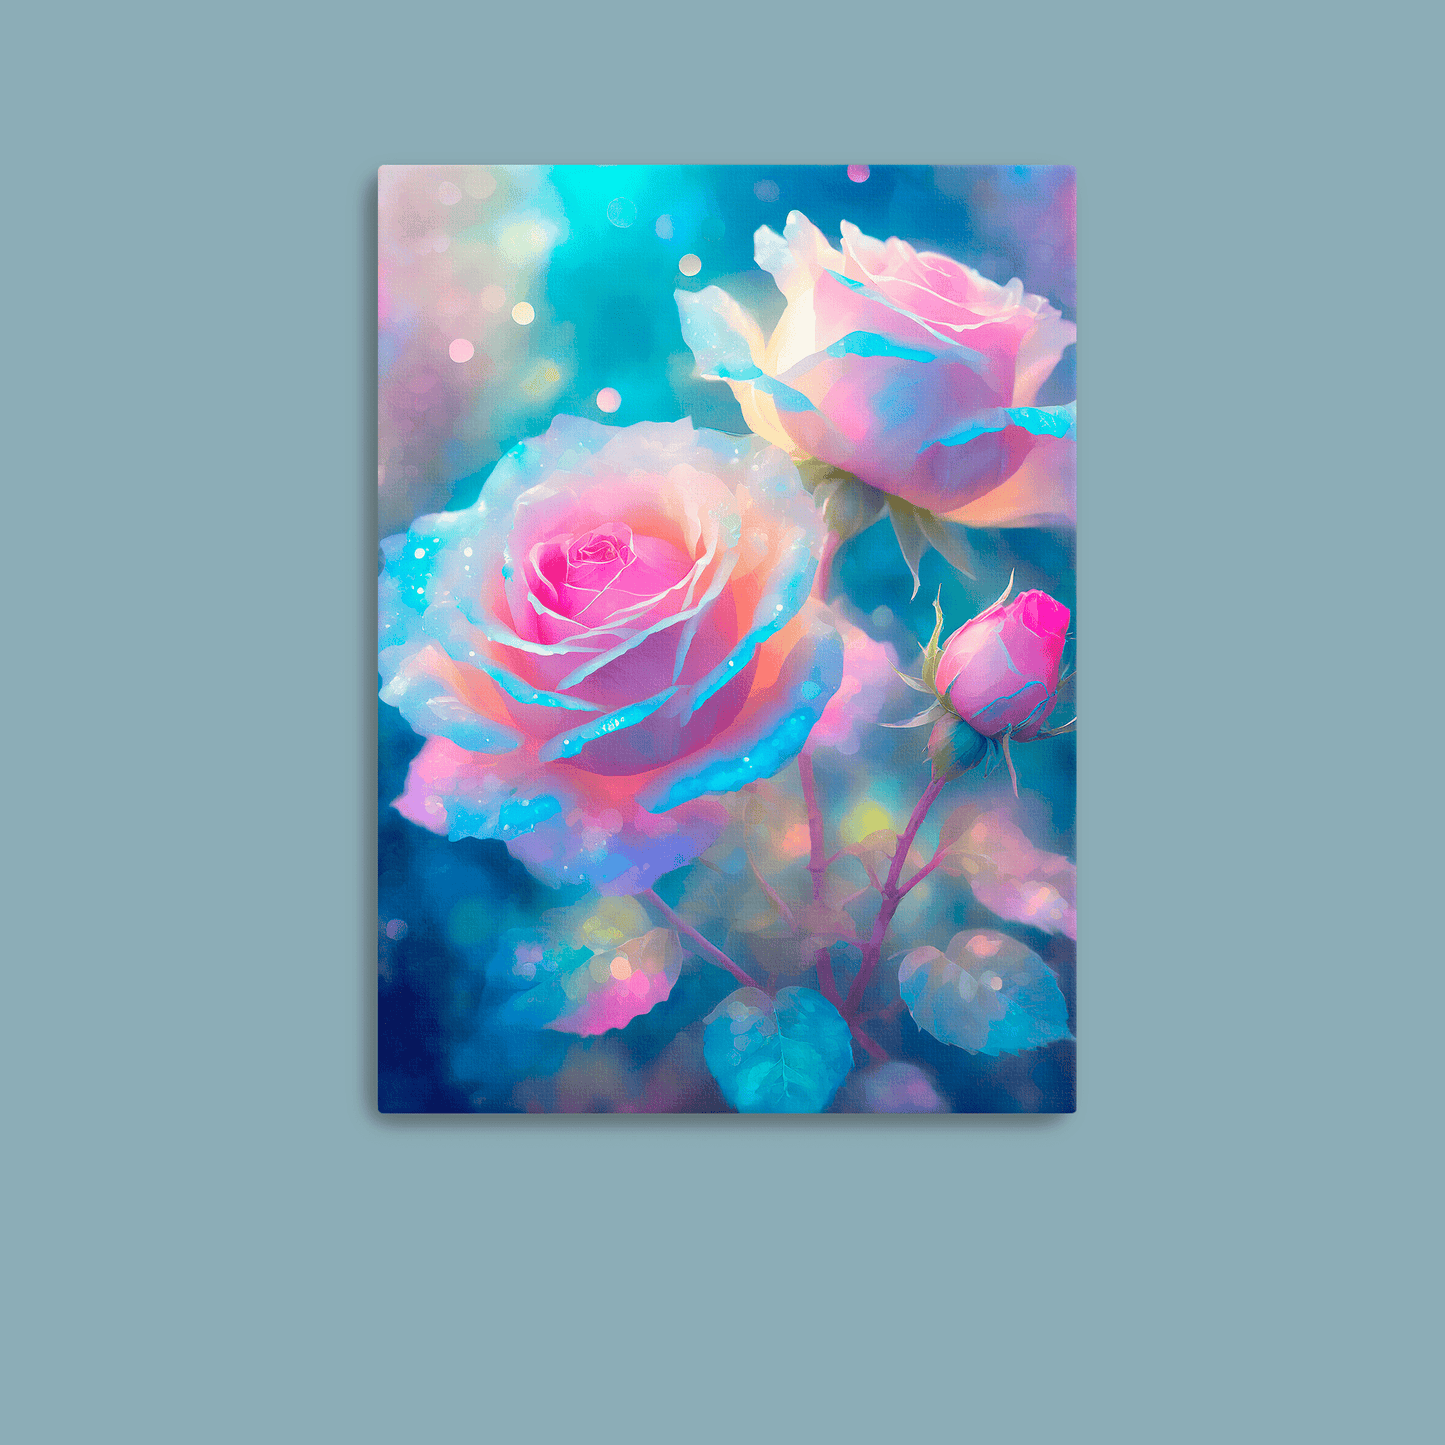 Celestial Roses - Metal Poster - Premium Metal Print